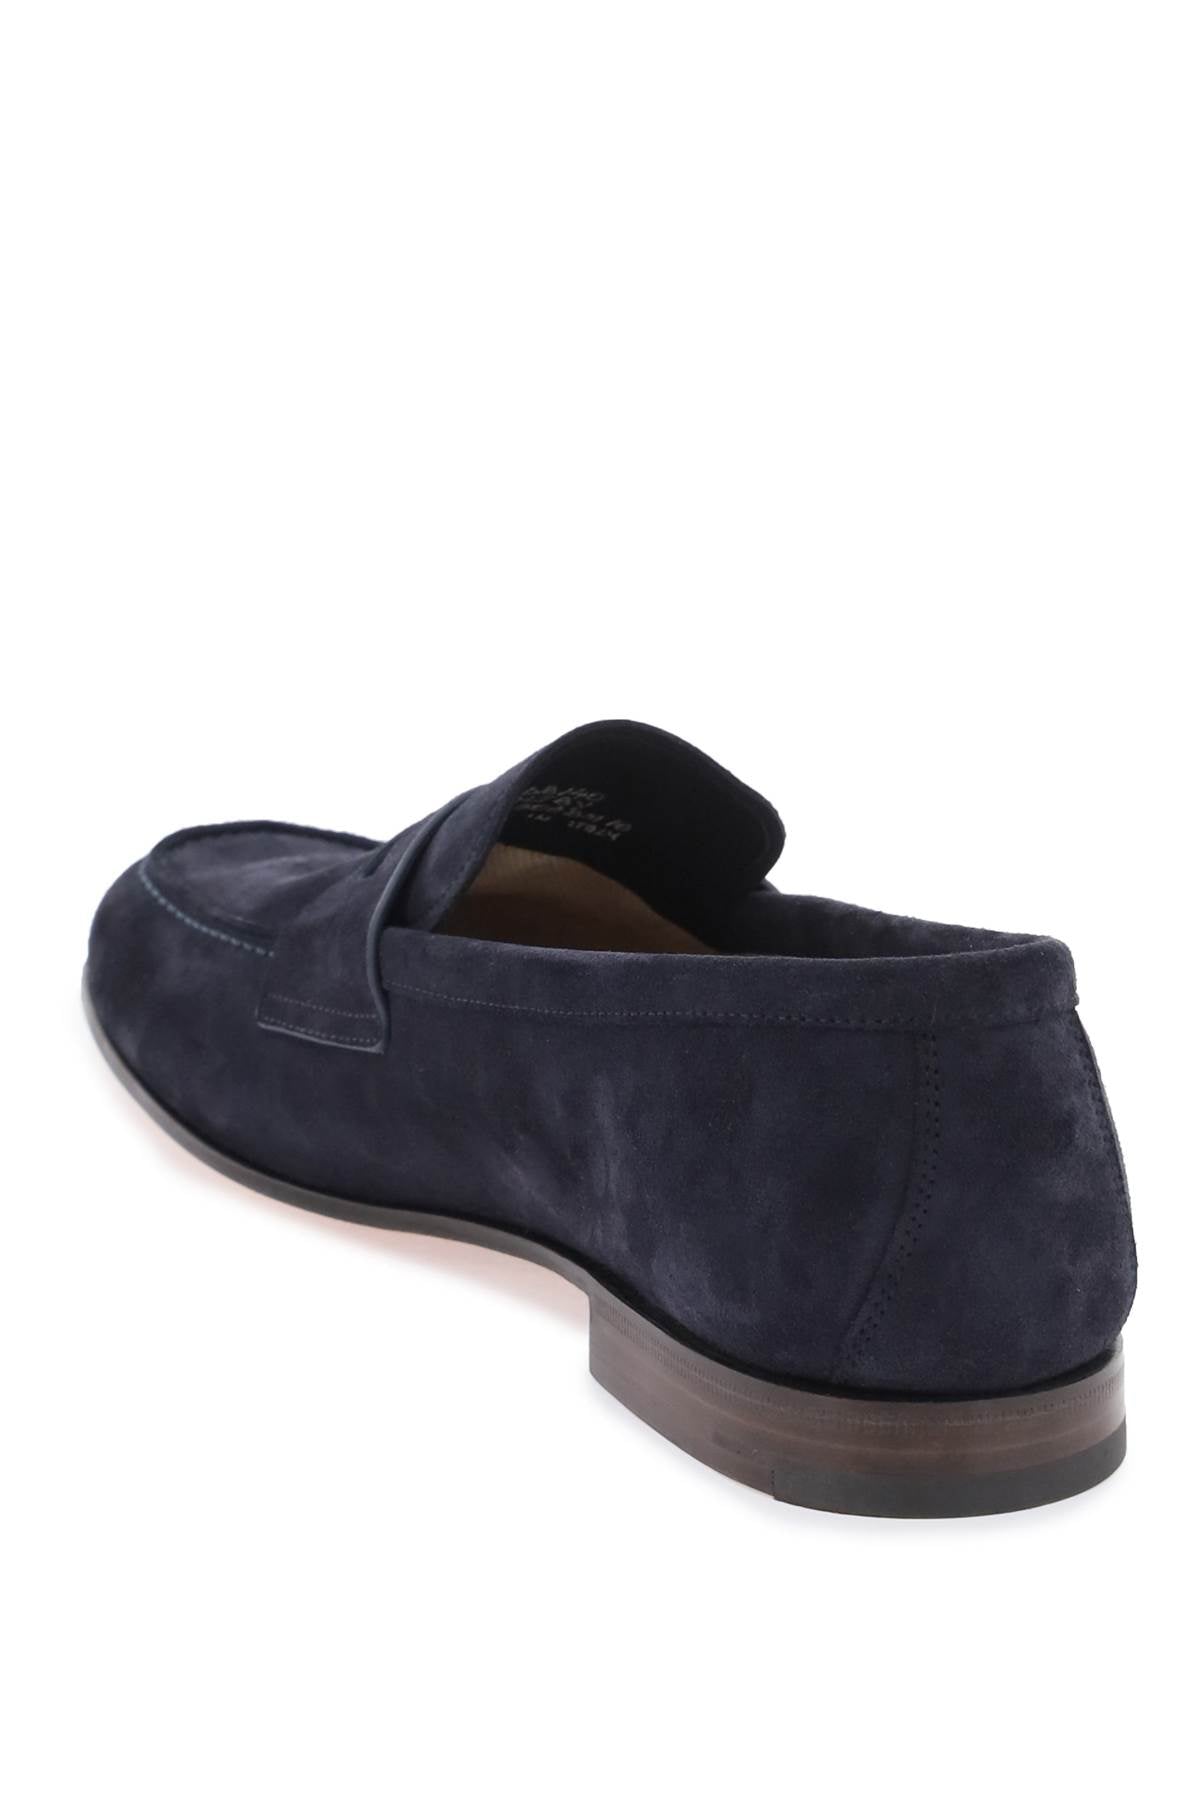 藍色絨面男士拖鞋-時尚舒適的最佳選擇